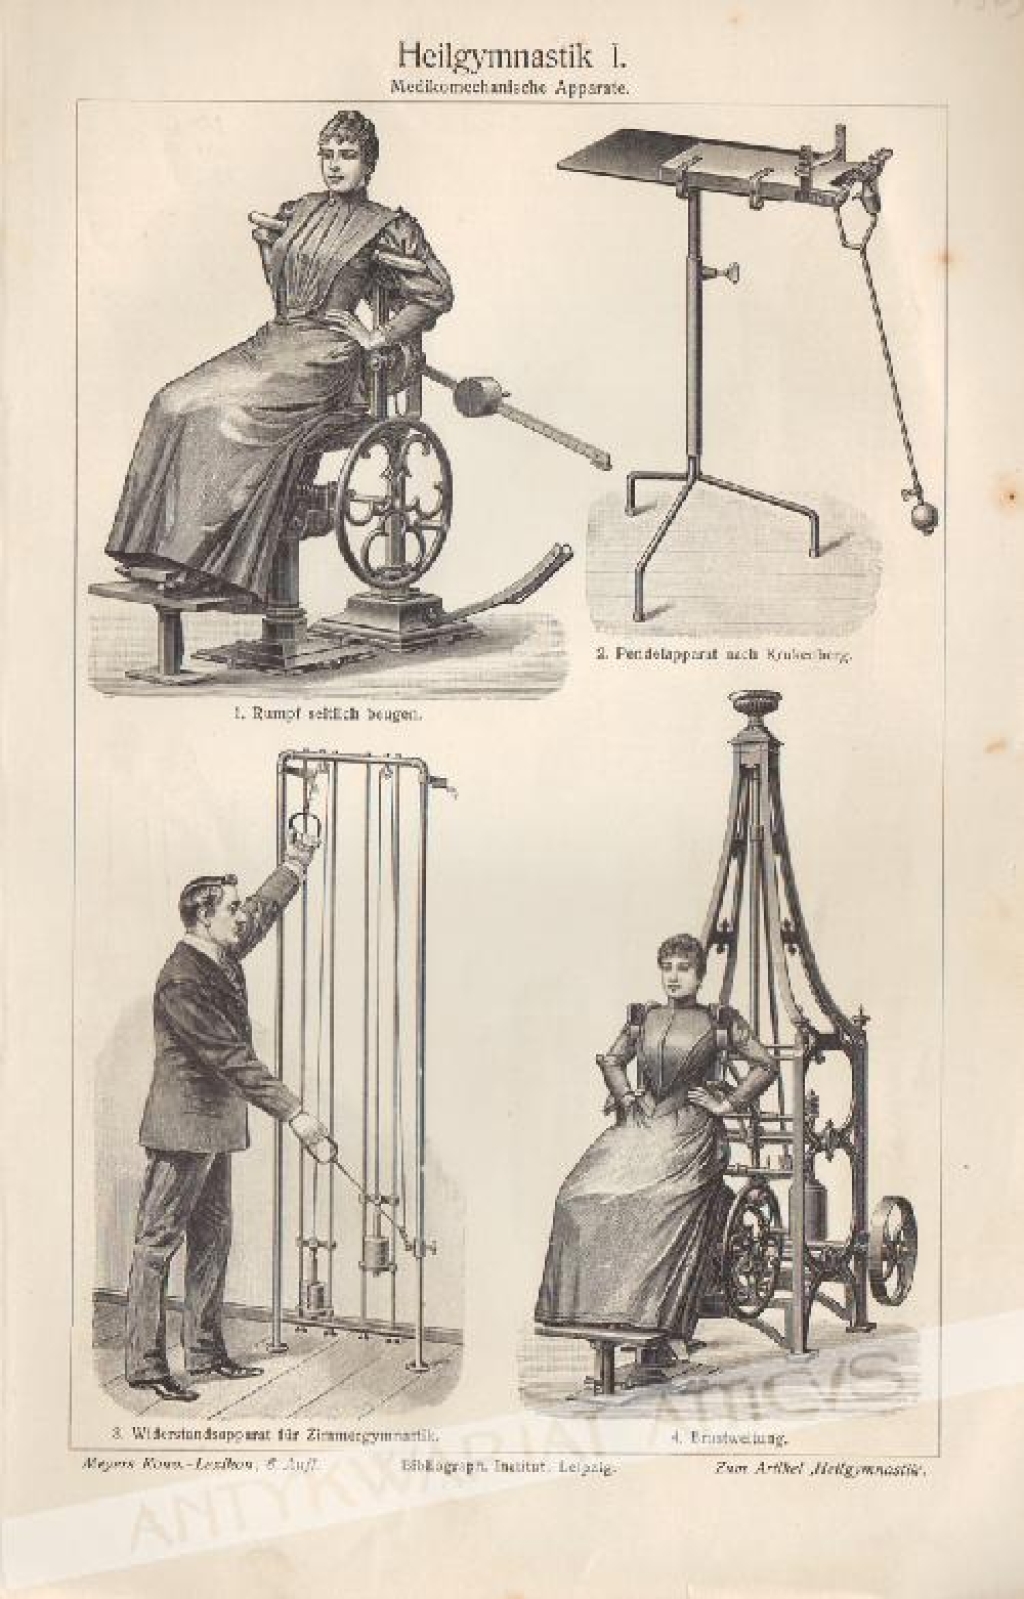 [rycina, 1895] Heilgymnastik I. (Medikomechanische Apparate.[przyrządy gimnastyczne] 